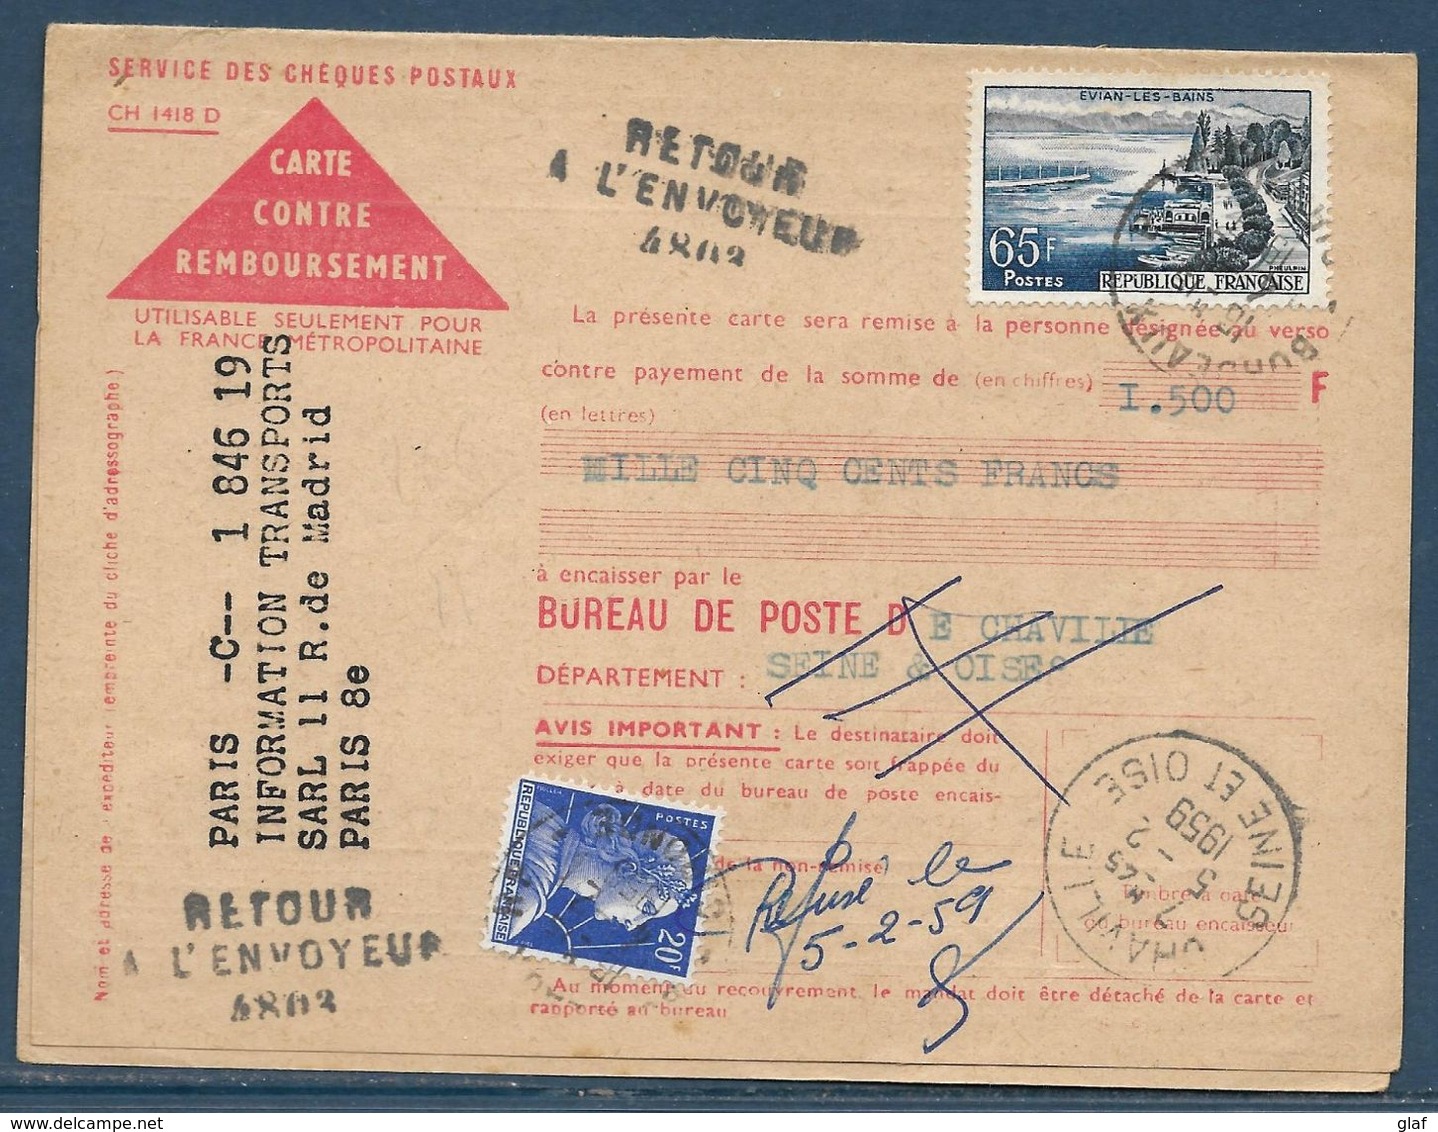 Retour à L’envoyeur à Numéro : 4803 (Chaville – Seine-et-Oise) Sur Carte Postale Remboursement Affr. 65 F Evian Et 20 F - Manual Postmarks